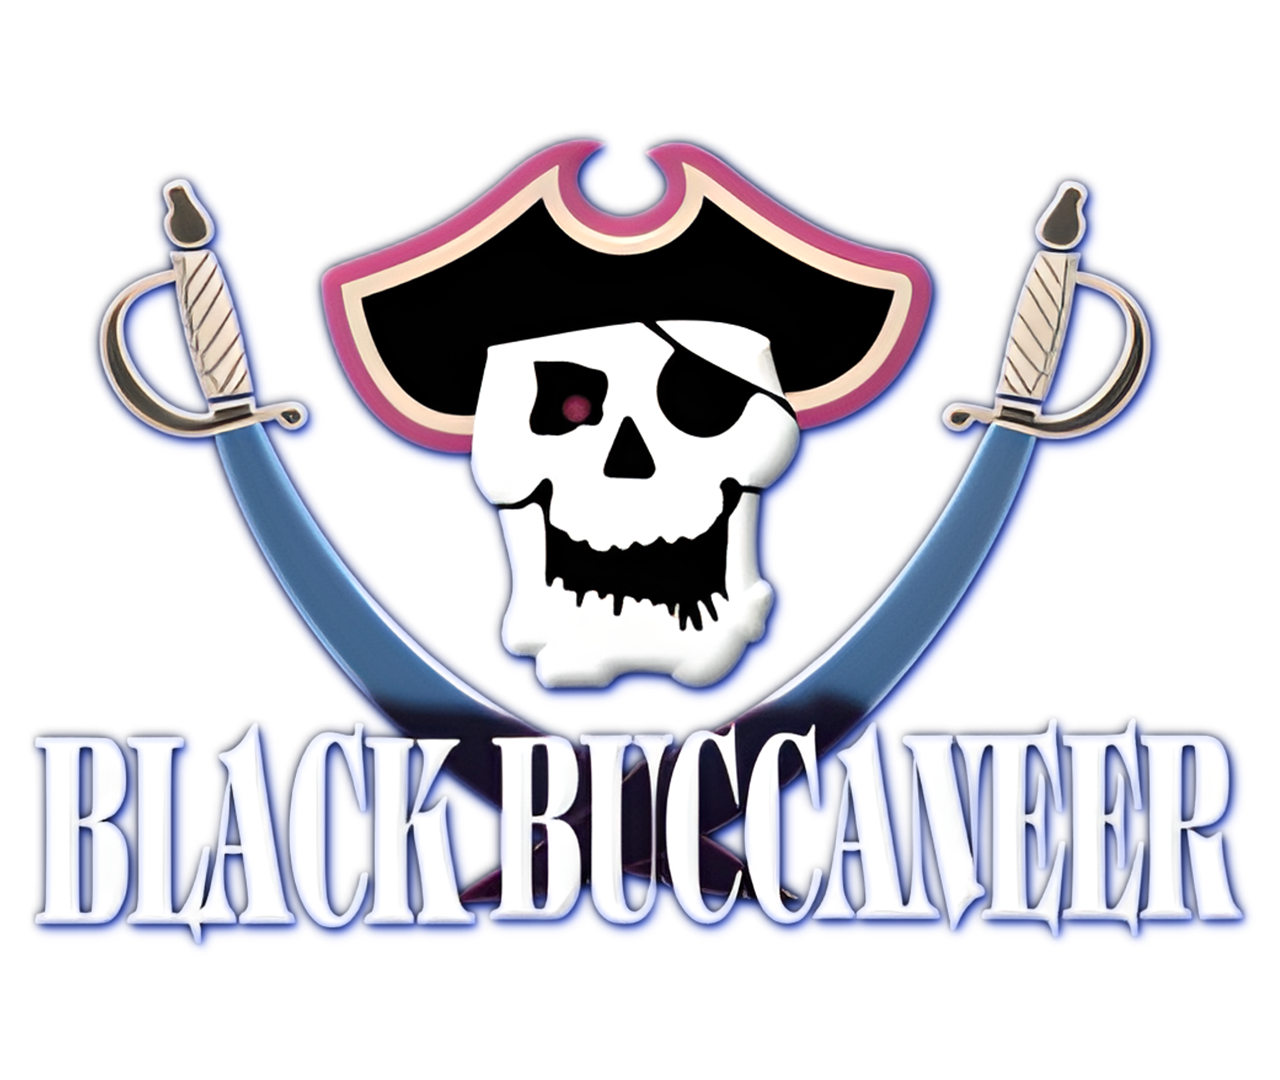 Black Buccaneer Logo